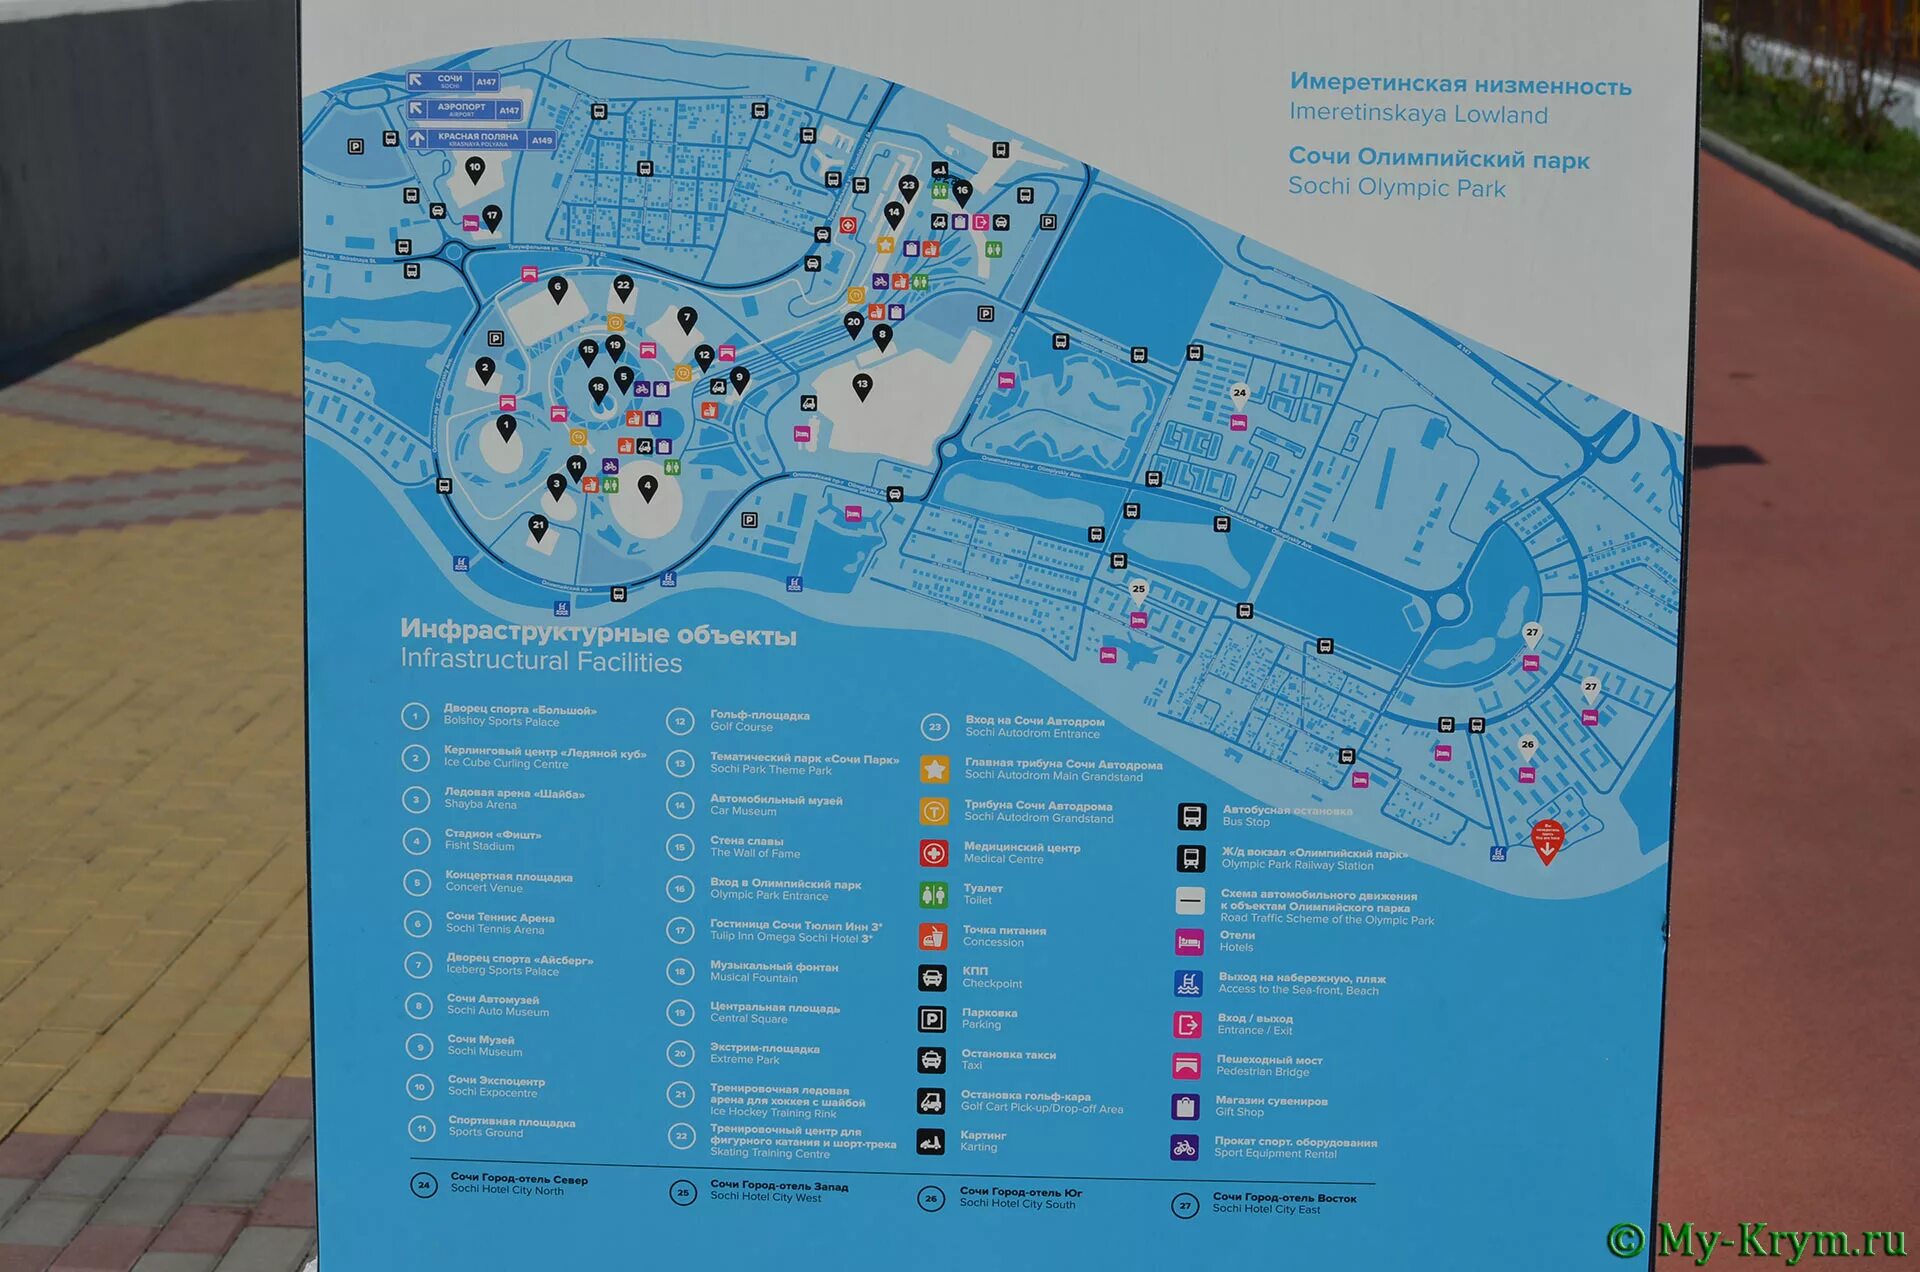 Сириус на карте адлера. Имеретинский курорт Олимпийский парк Сириус. Сочи парк отель Имеретинская низменность. Имеретинский отель Сочи схема кварталов.